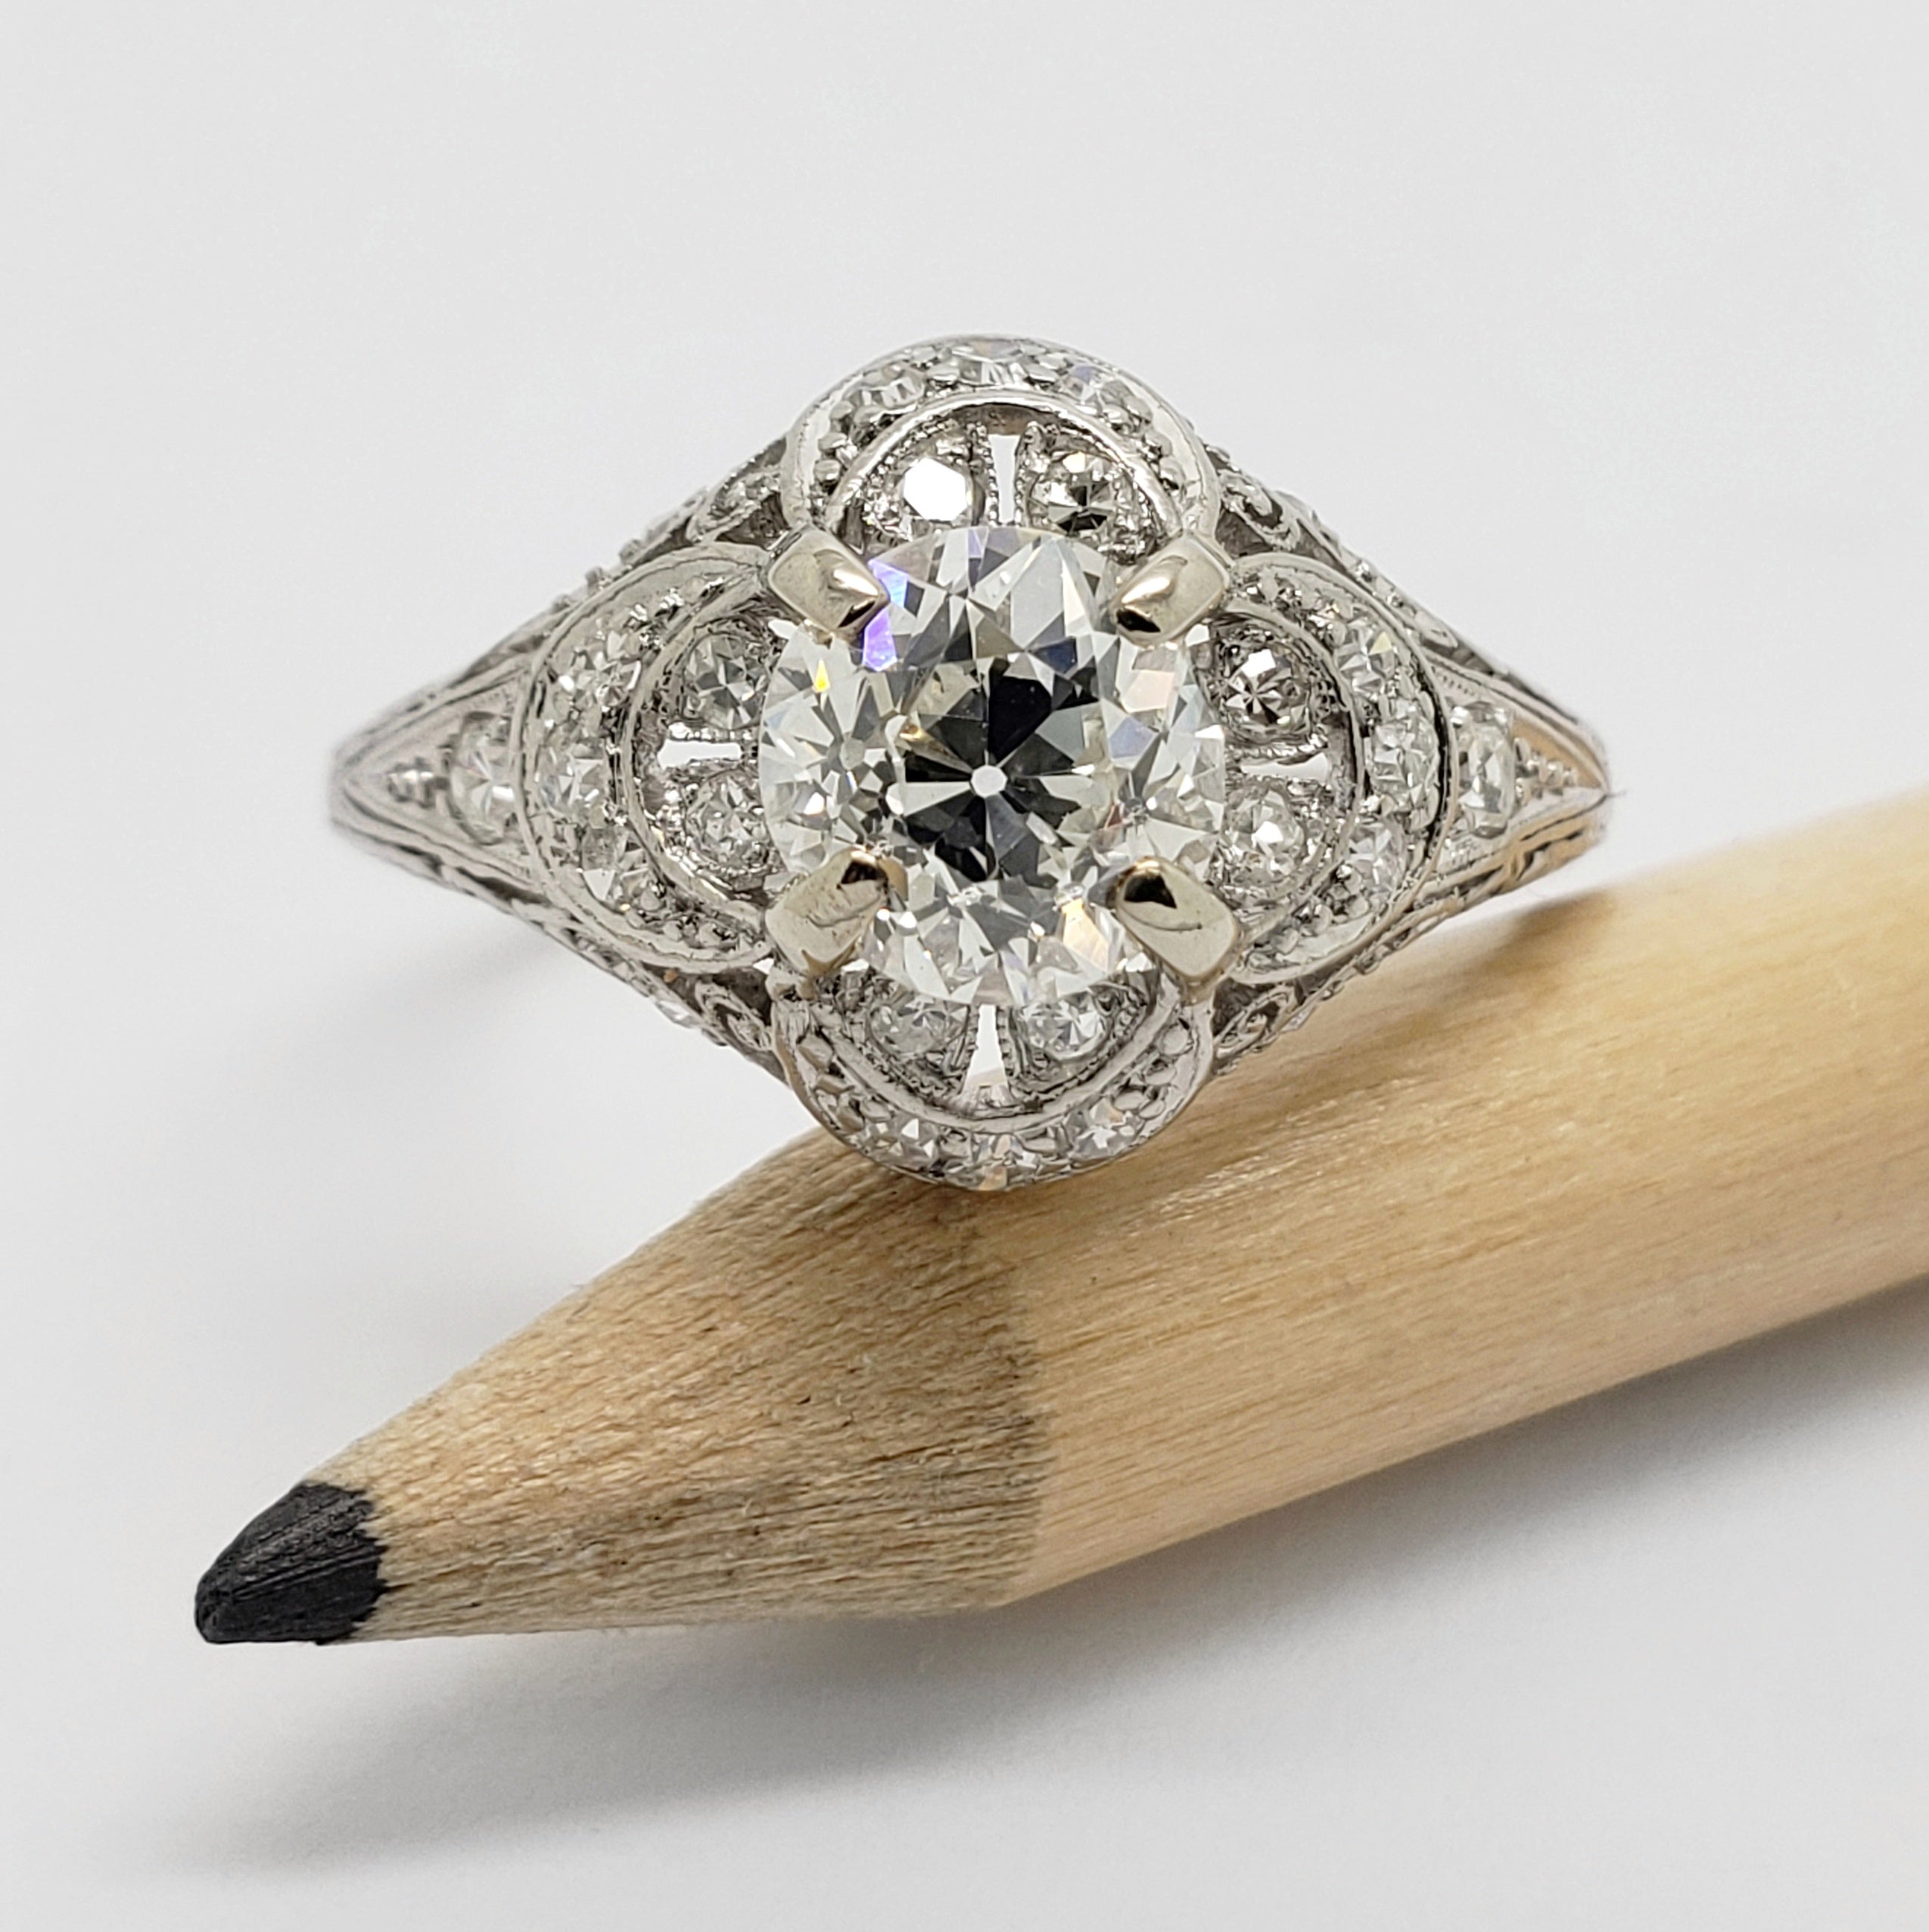 Antique Platinum and Diamond Ring | Era Design Vancouver Canada